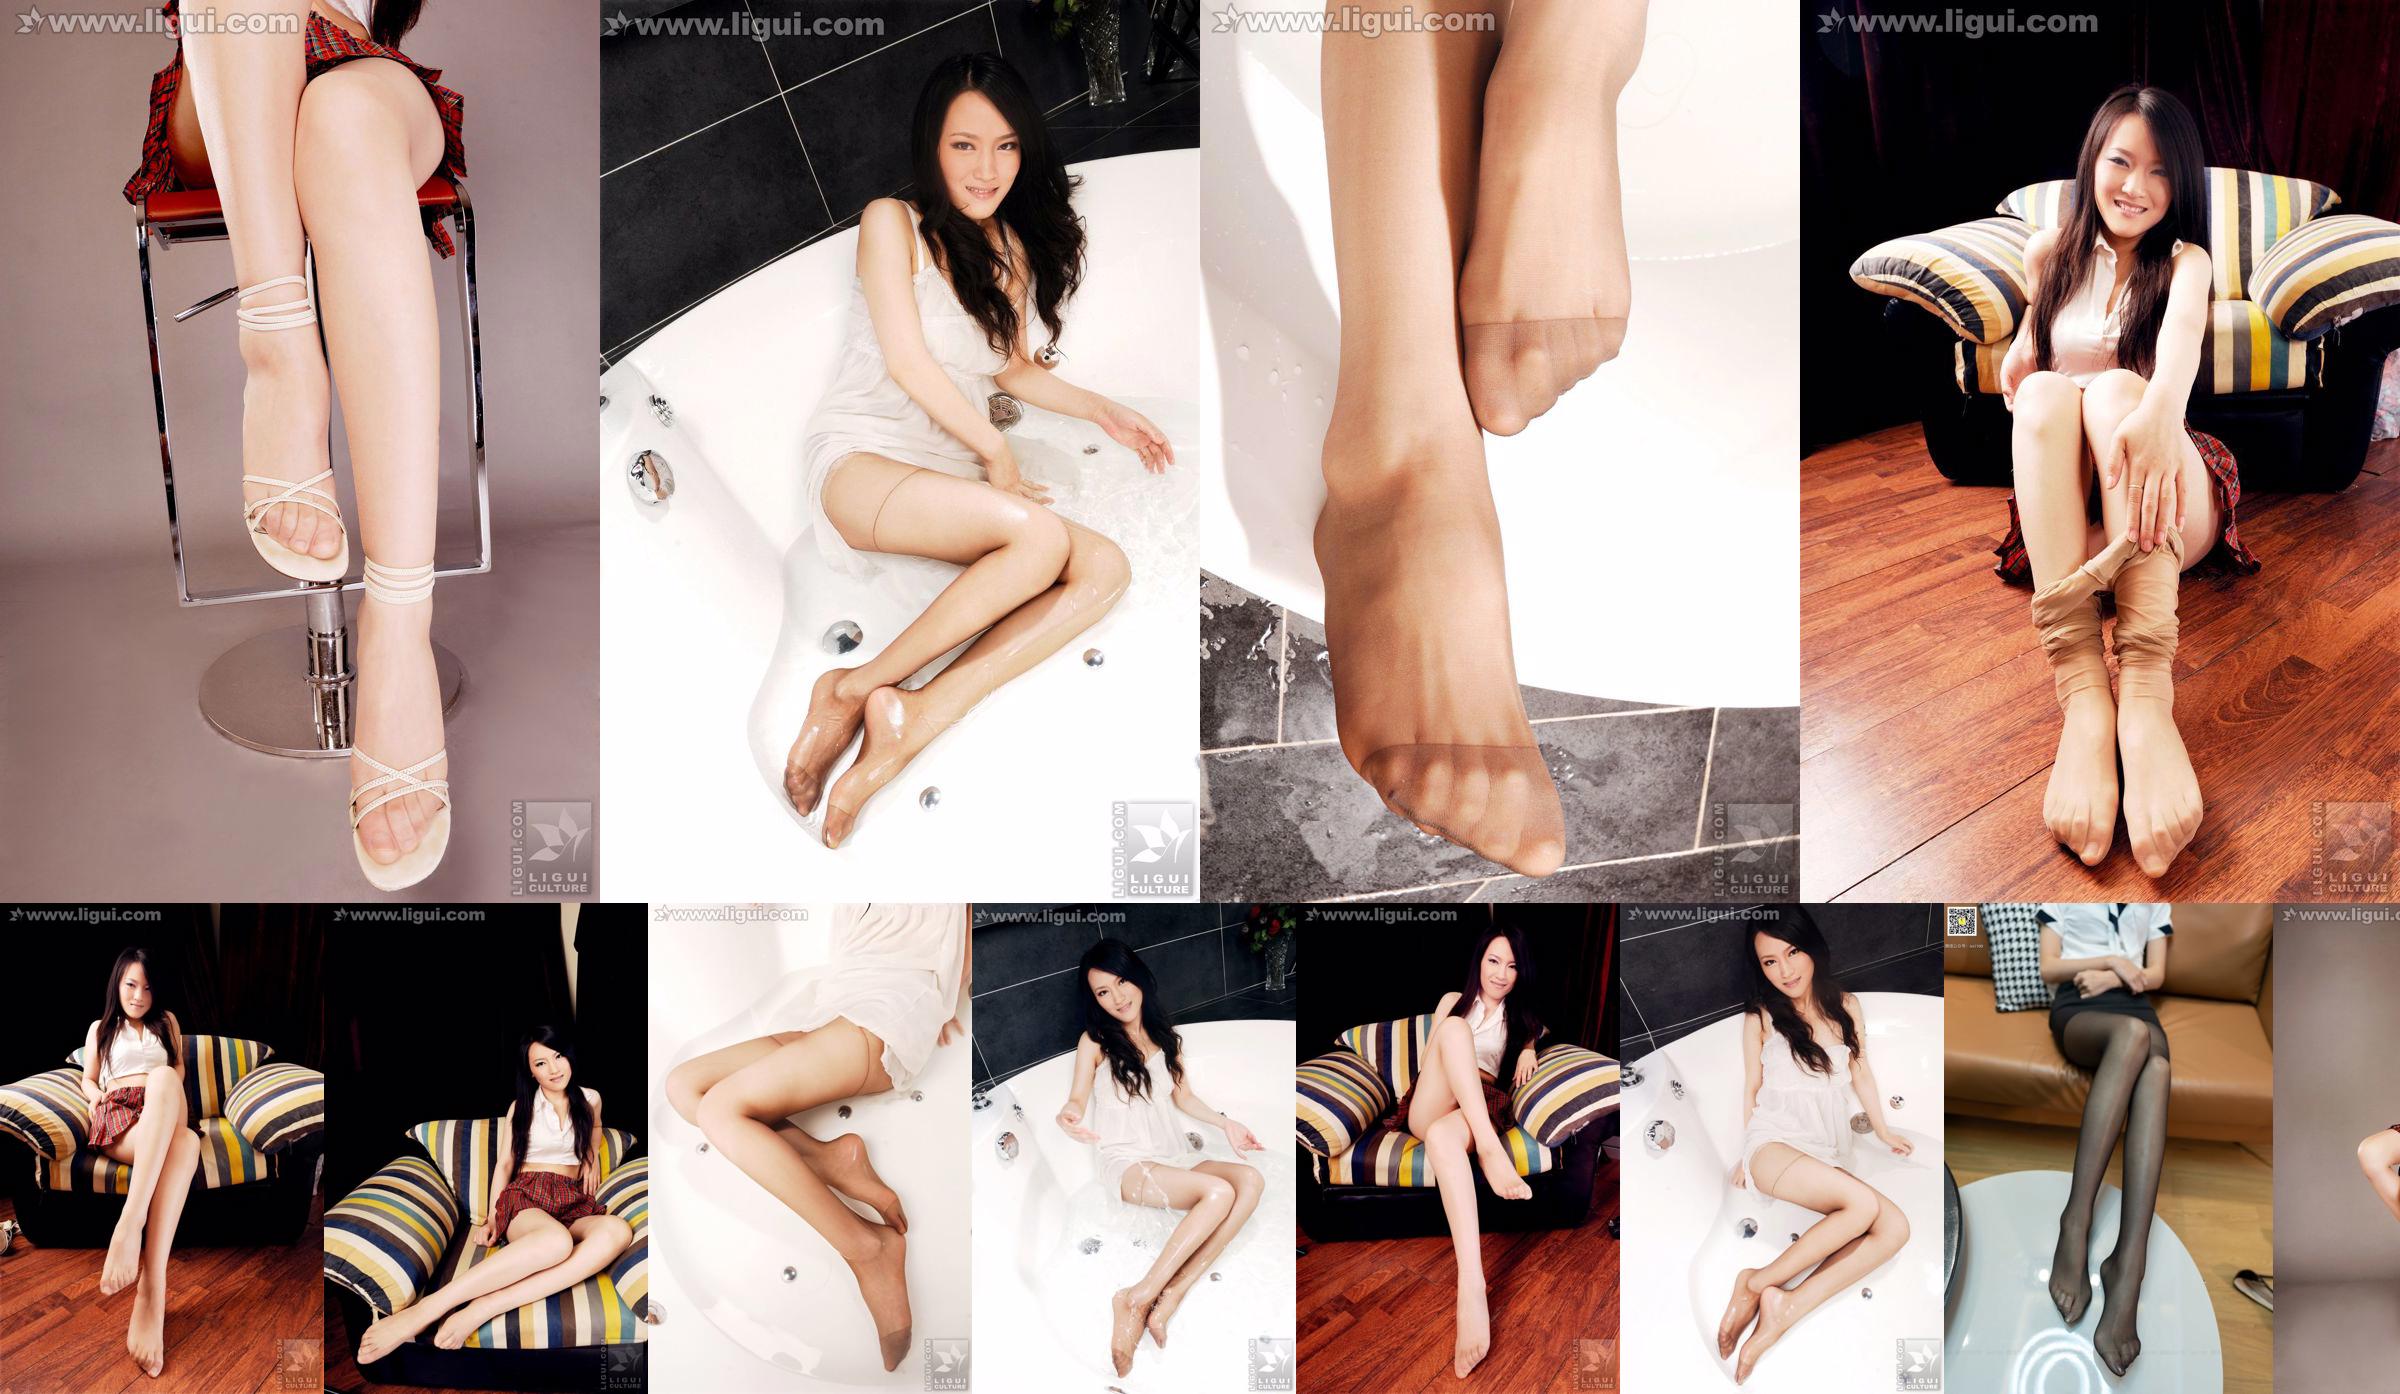 นางแบบเหวินถิง "Sweet and Cute Meat Stockings with High Heels" [丽柜 LiGui] ภาพถ่ายขาสวยและเท้าหยก No.7b8793 หน้า 1